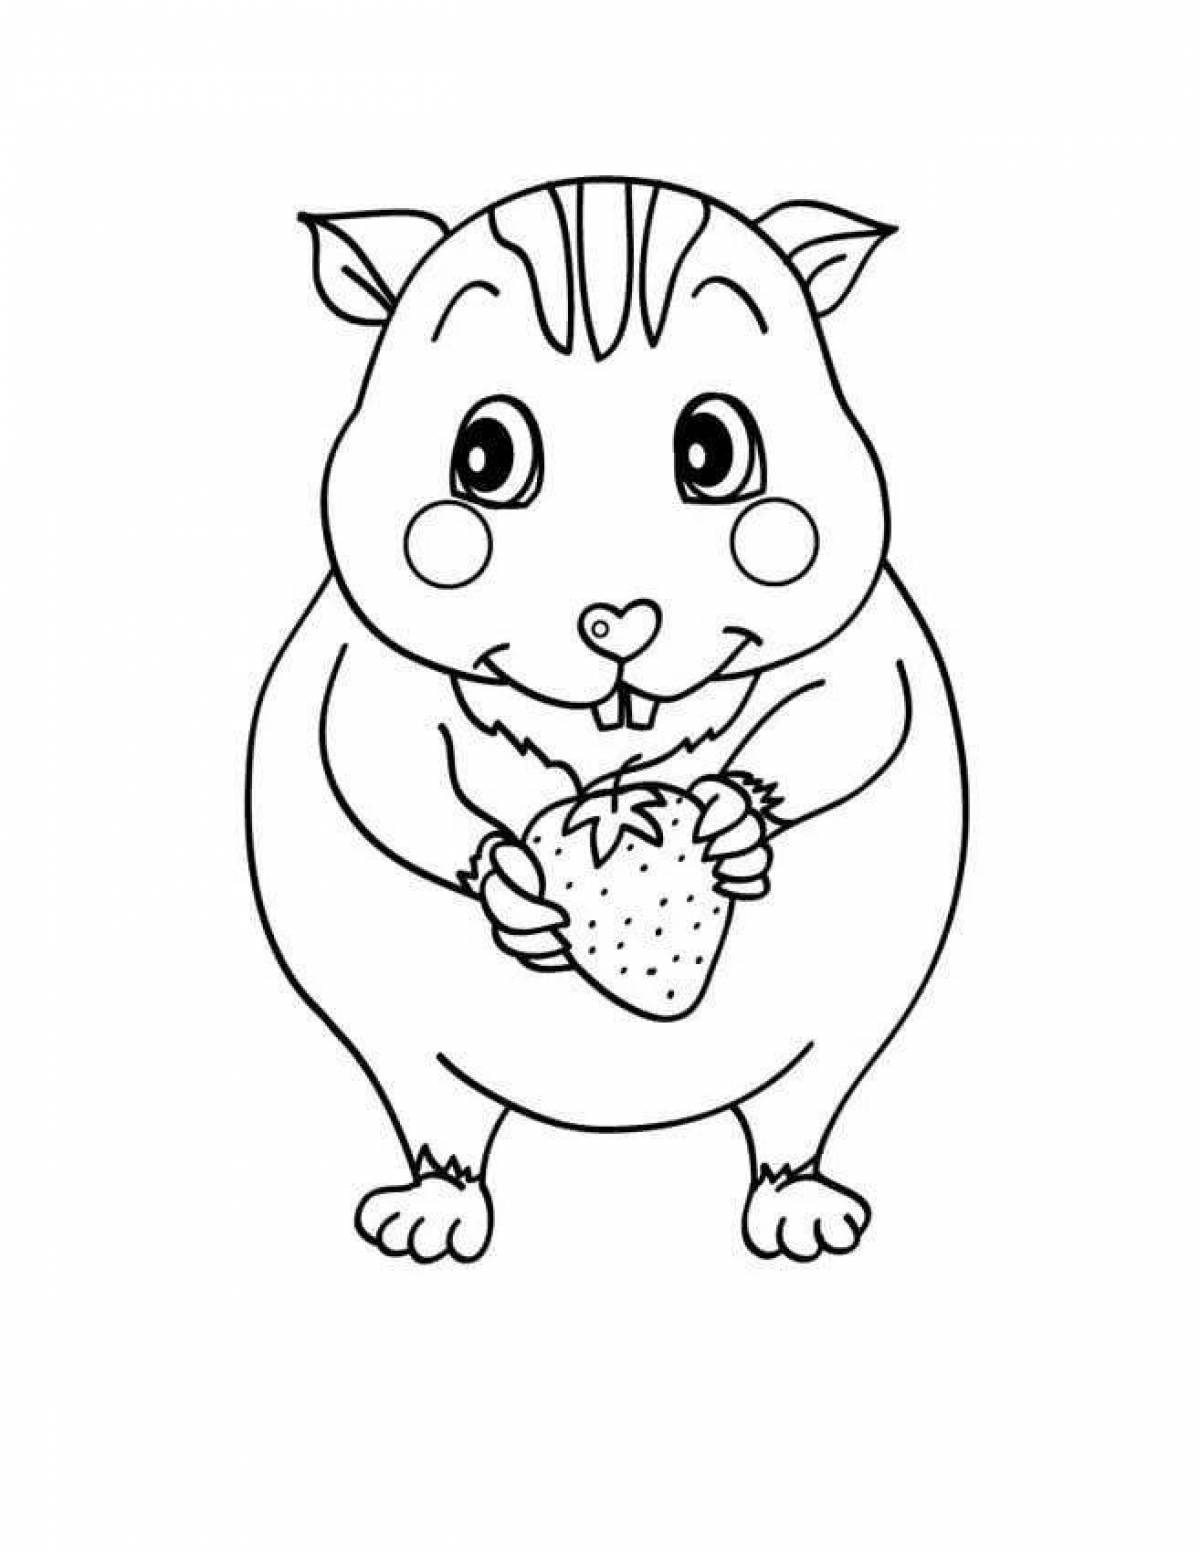 Fun hamster coloring book for kids